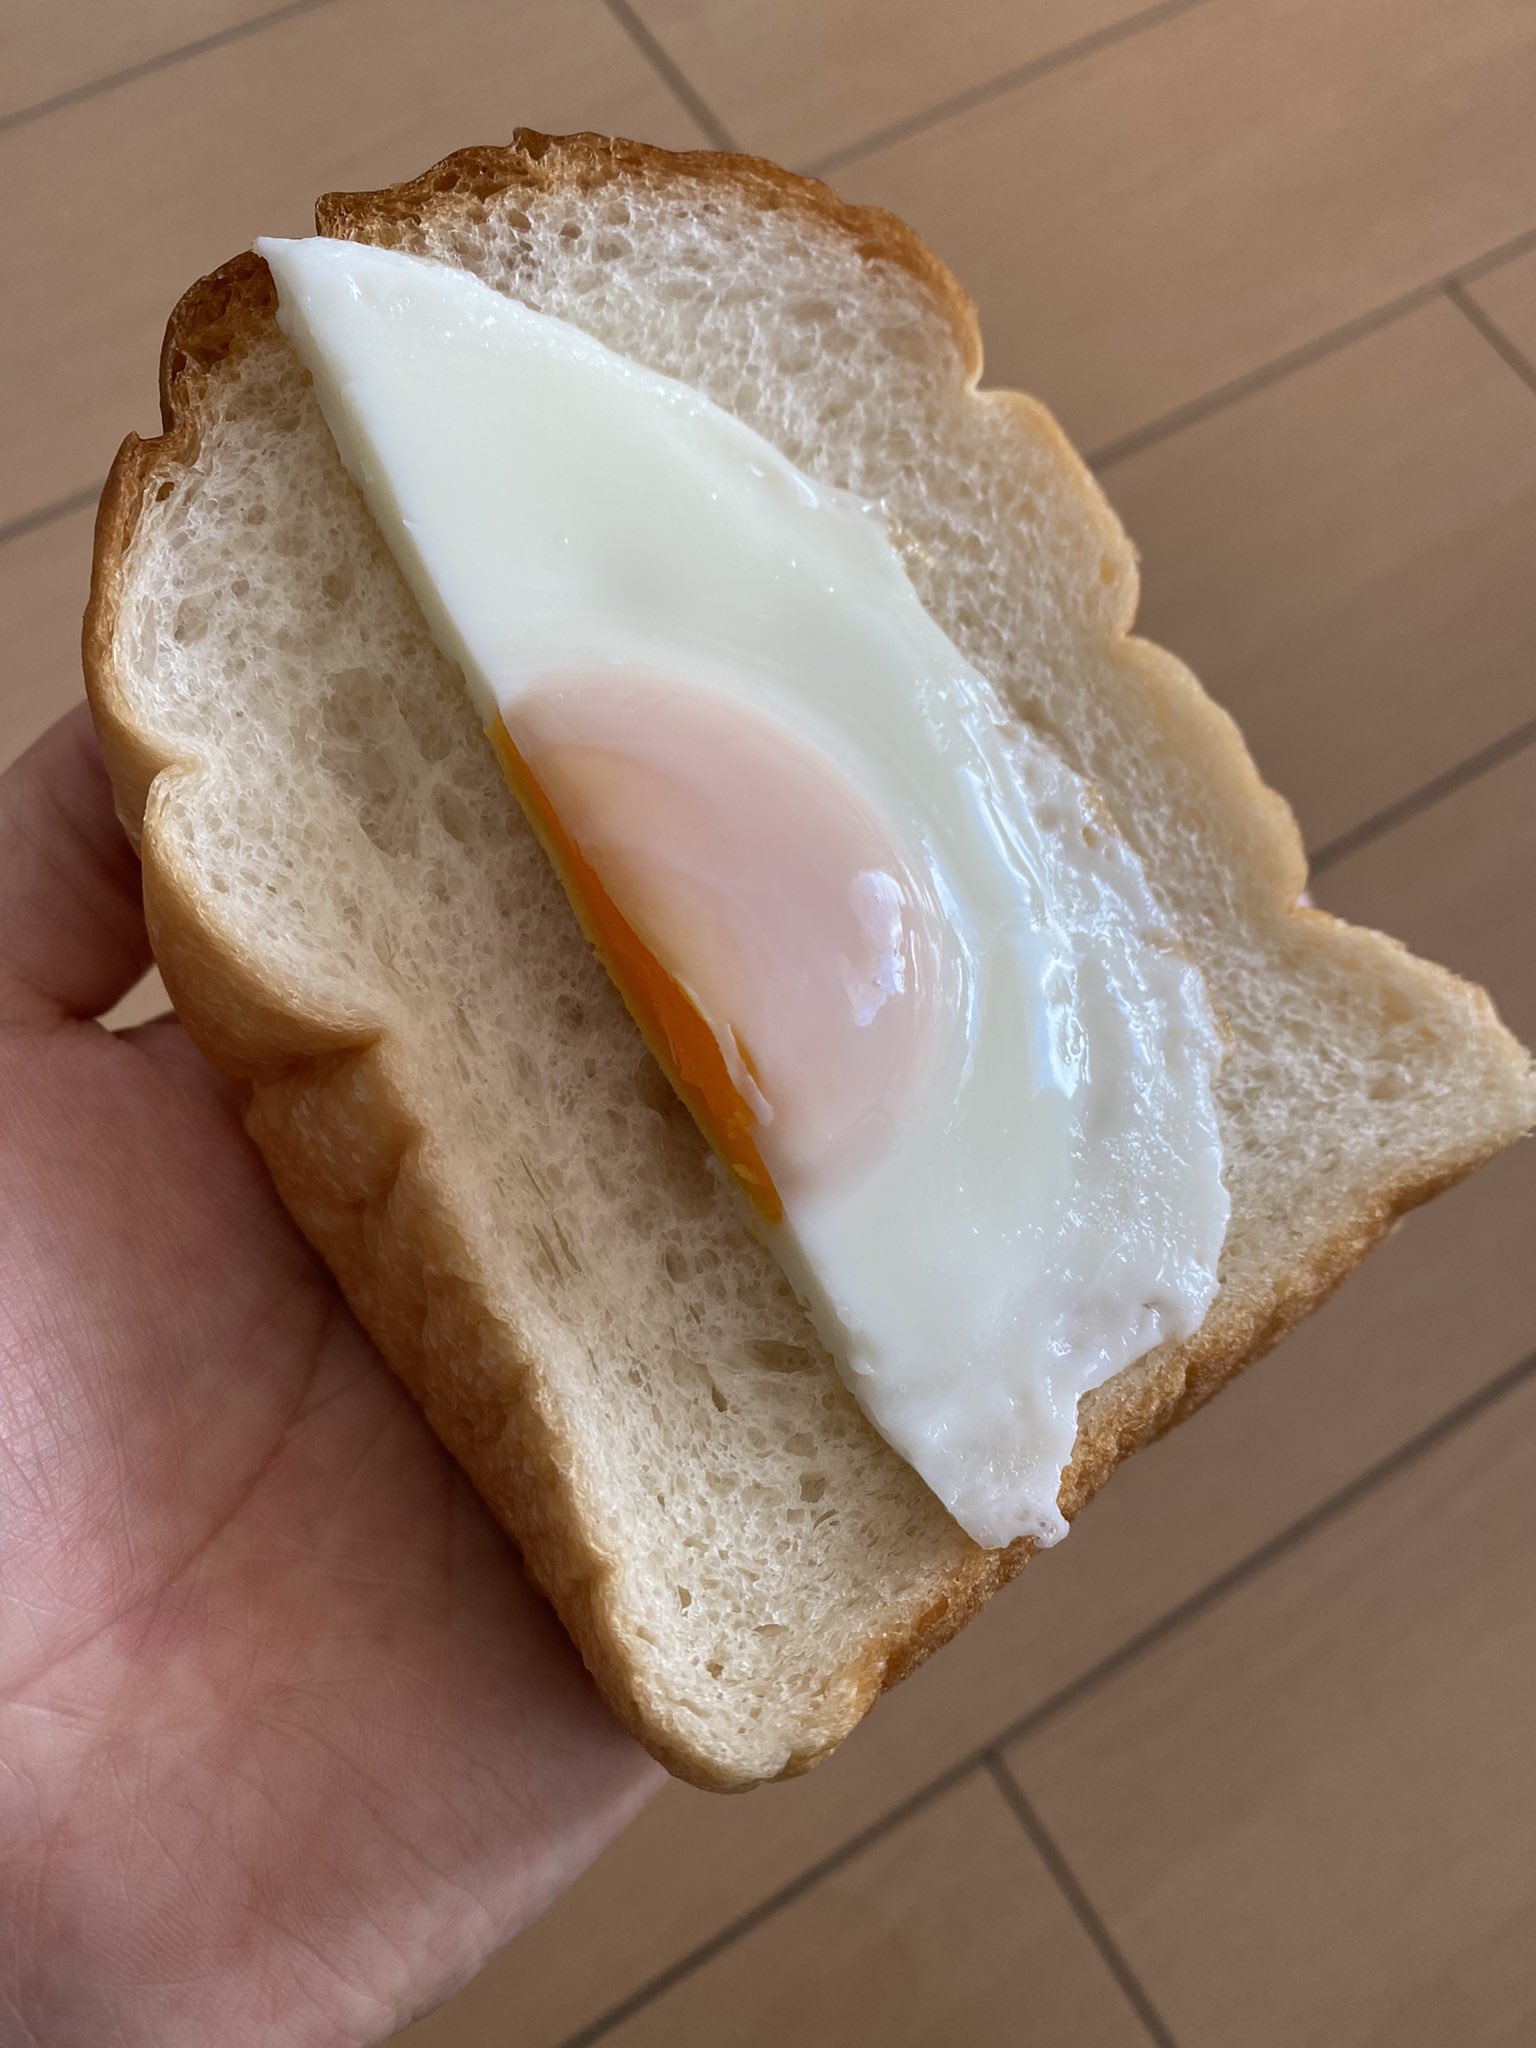 Hikodai 佐藤彦大 某朝ごはん パンと鶏卵があったので ラピュタパン T Co Crwkjhjgyz Twitter